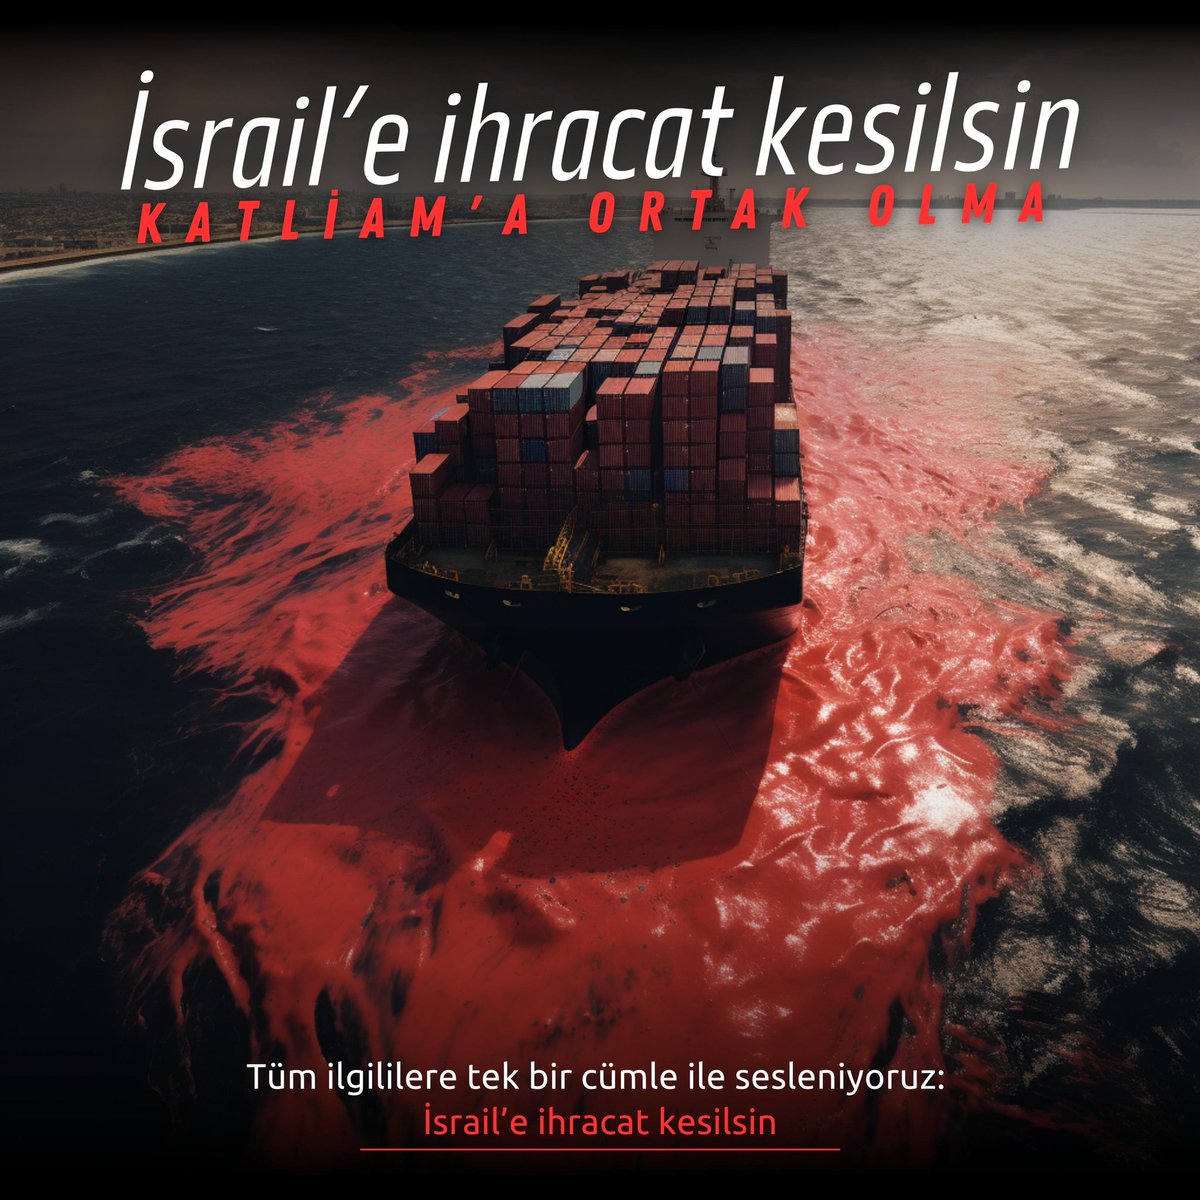 İsrail’e ihracat kesilsin 
Kendi ellerimizle beslemeyelim!
@RTErdogan
@RTEdijital
@iletisim 
@tcbestepe 
@TCTarim
@ibrahimyumakli
@ticaret 
@omerbolatTR
@mehmethaditunc
@mustuzcu